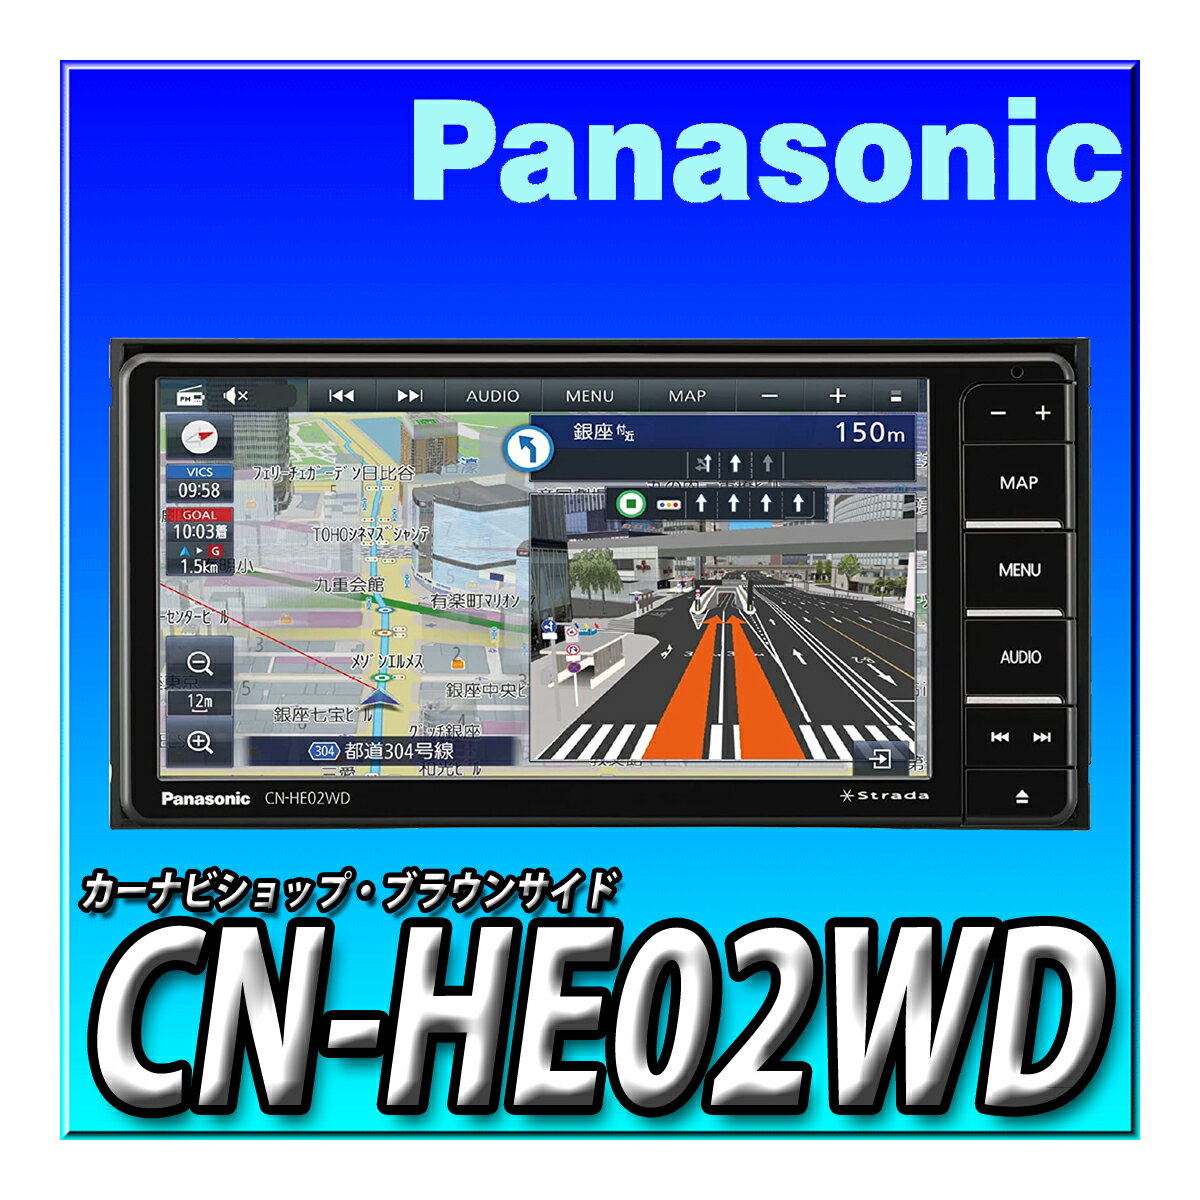 CN-HE02WD パナソニック(Panasonic) カーナビ ストラーダ 7インチ ワイド フルセグ HD液晶搭載 Bluetoo..